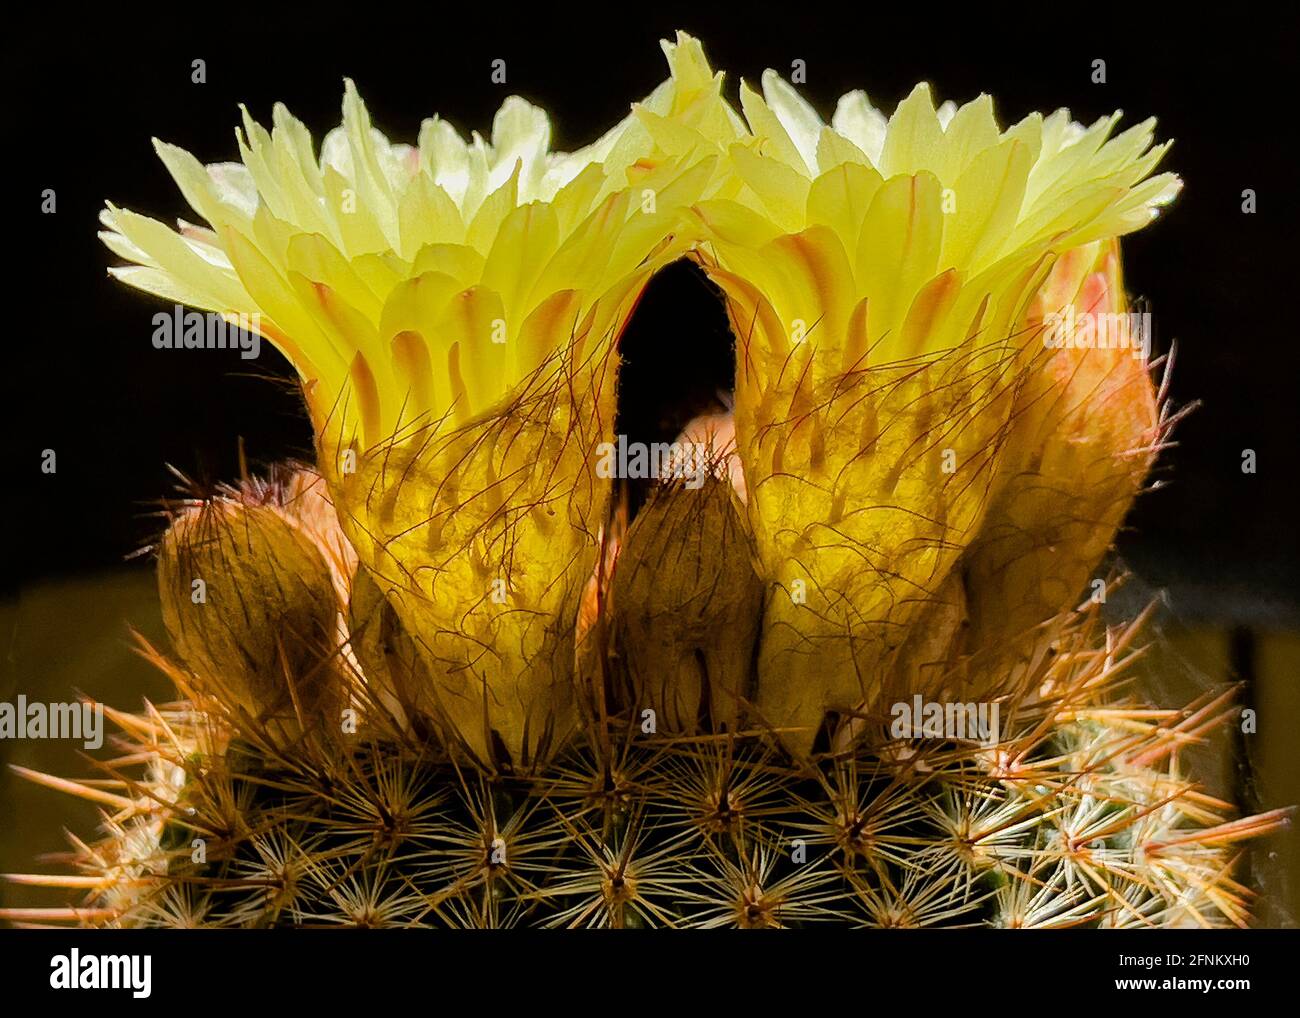 Schillerndes hintergrundbeleuchtetes Profil von zwei gelben Parodia erubescens Notocactus Schlosserie Kugelkaktus blüht auf schwarzem Hintergrund und zeigt Details Stockfoto